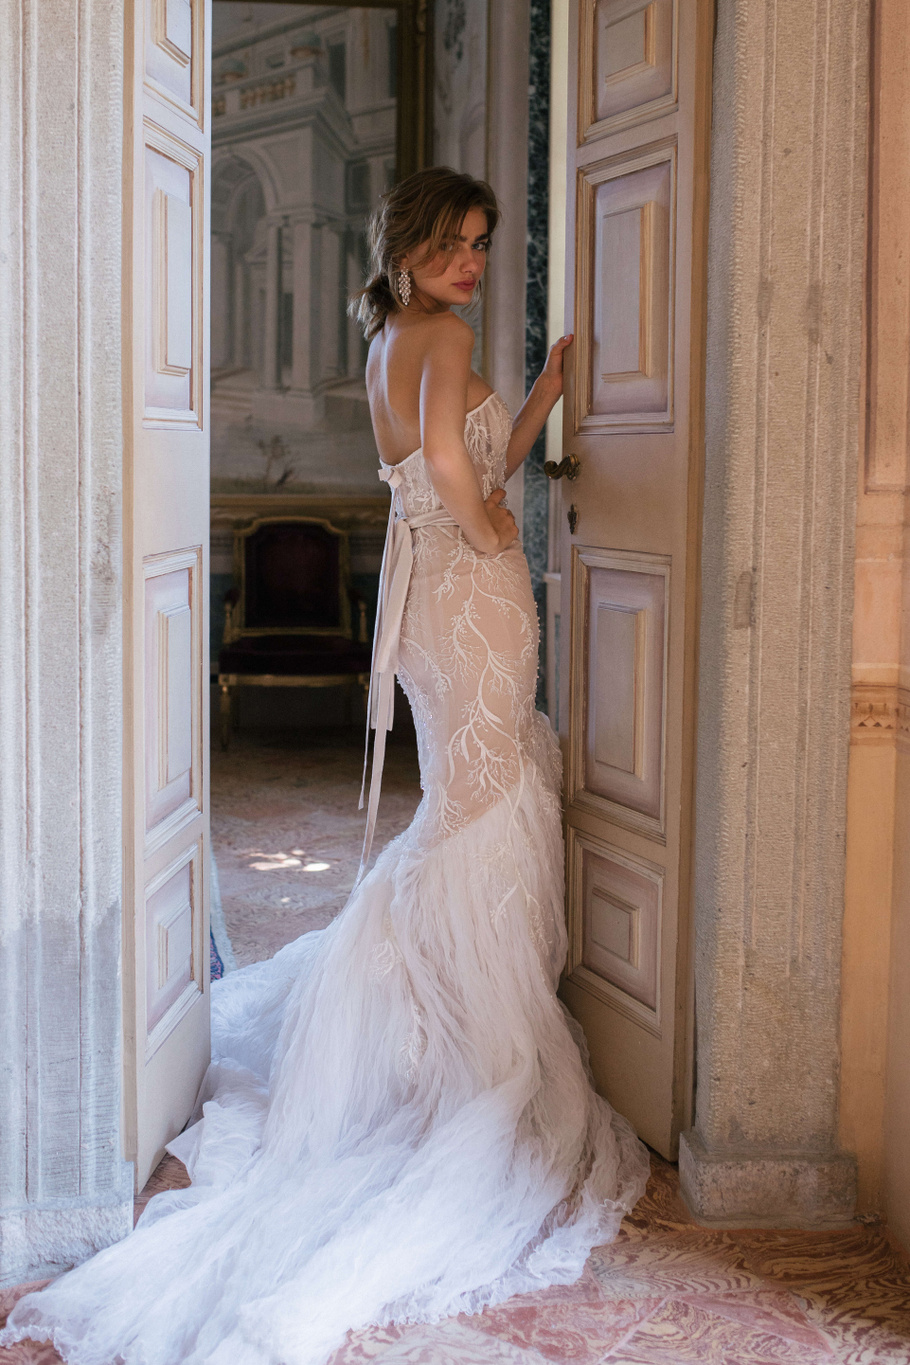 Купить свадебное платье «Кемерон» Анже Этуаль из коллекции 2020 года в салоне «Мэри Трюфель»